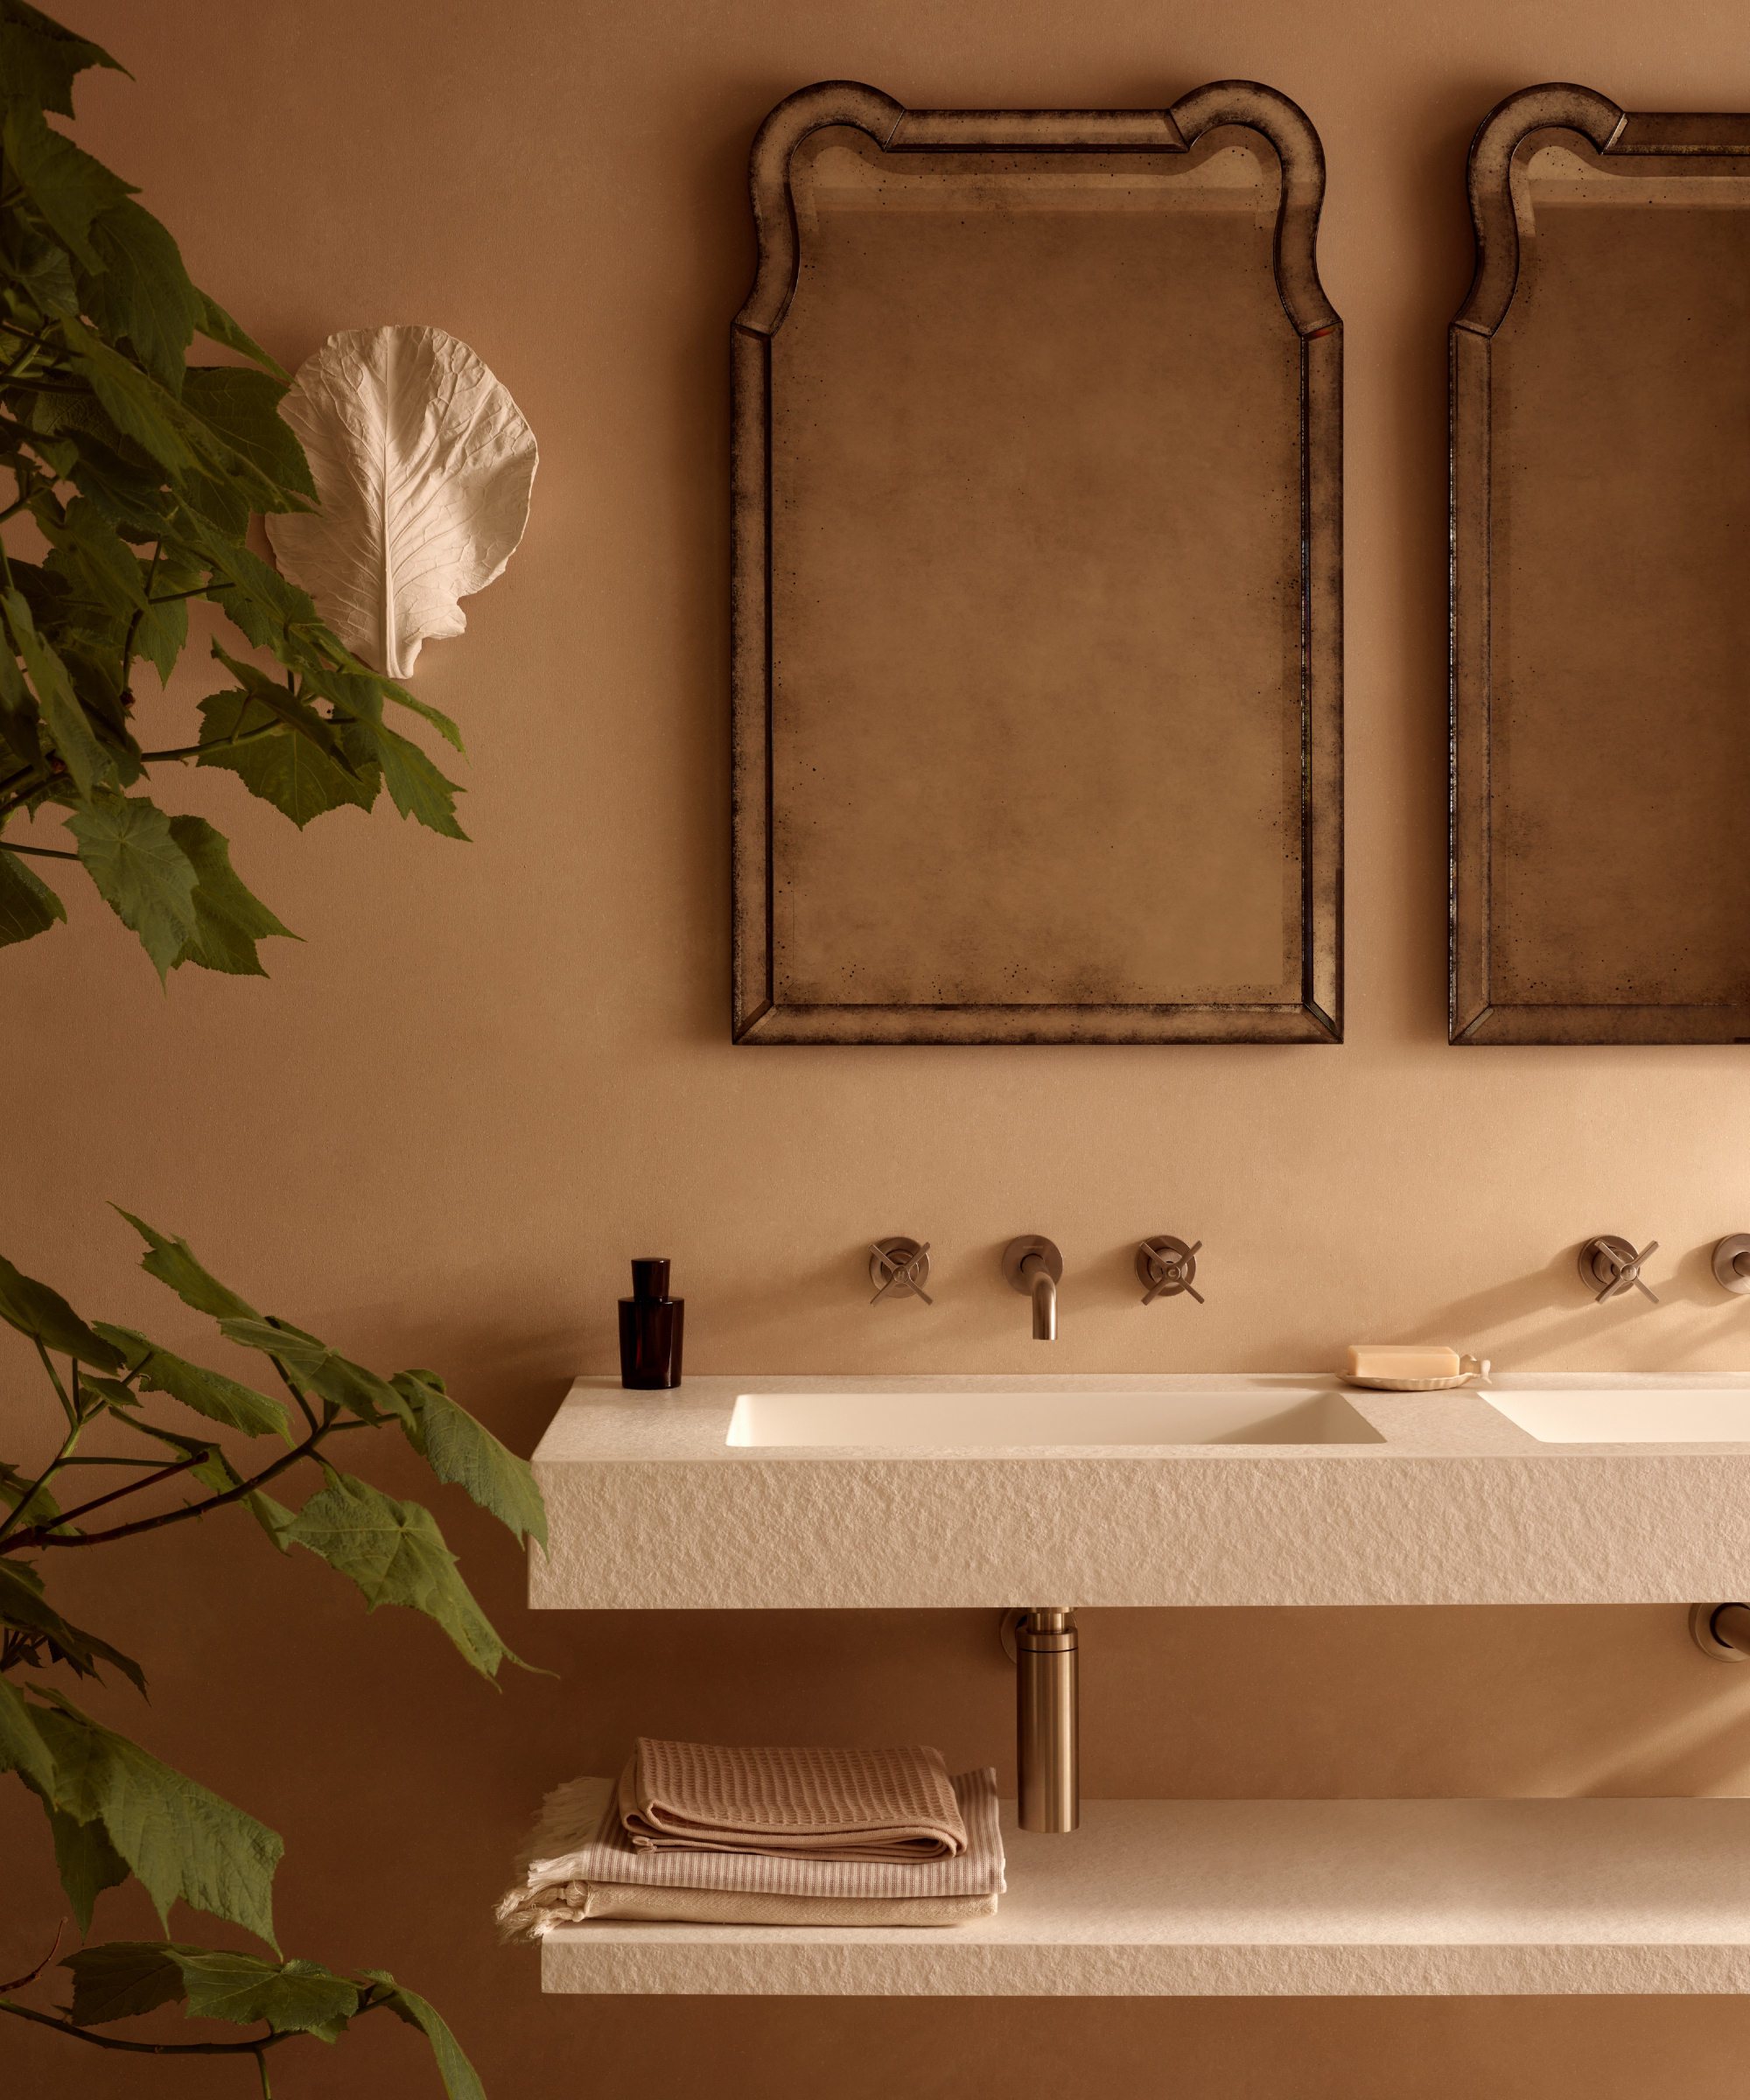 donnez à votre maison l'impression d'être un sanctuaire, salle de bains de style spa avec deux miroirs et deux vasques, fixation murale, étagère en dessous, plante